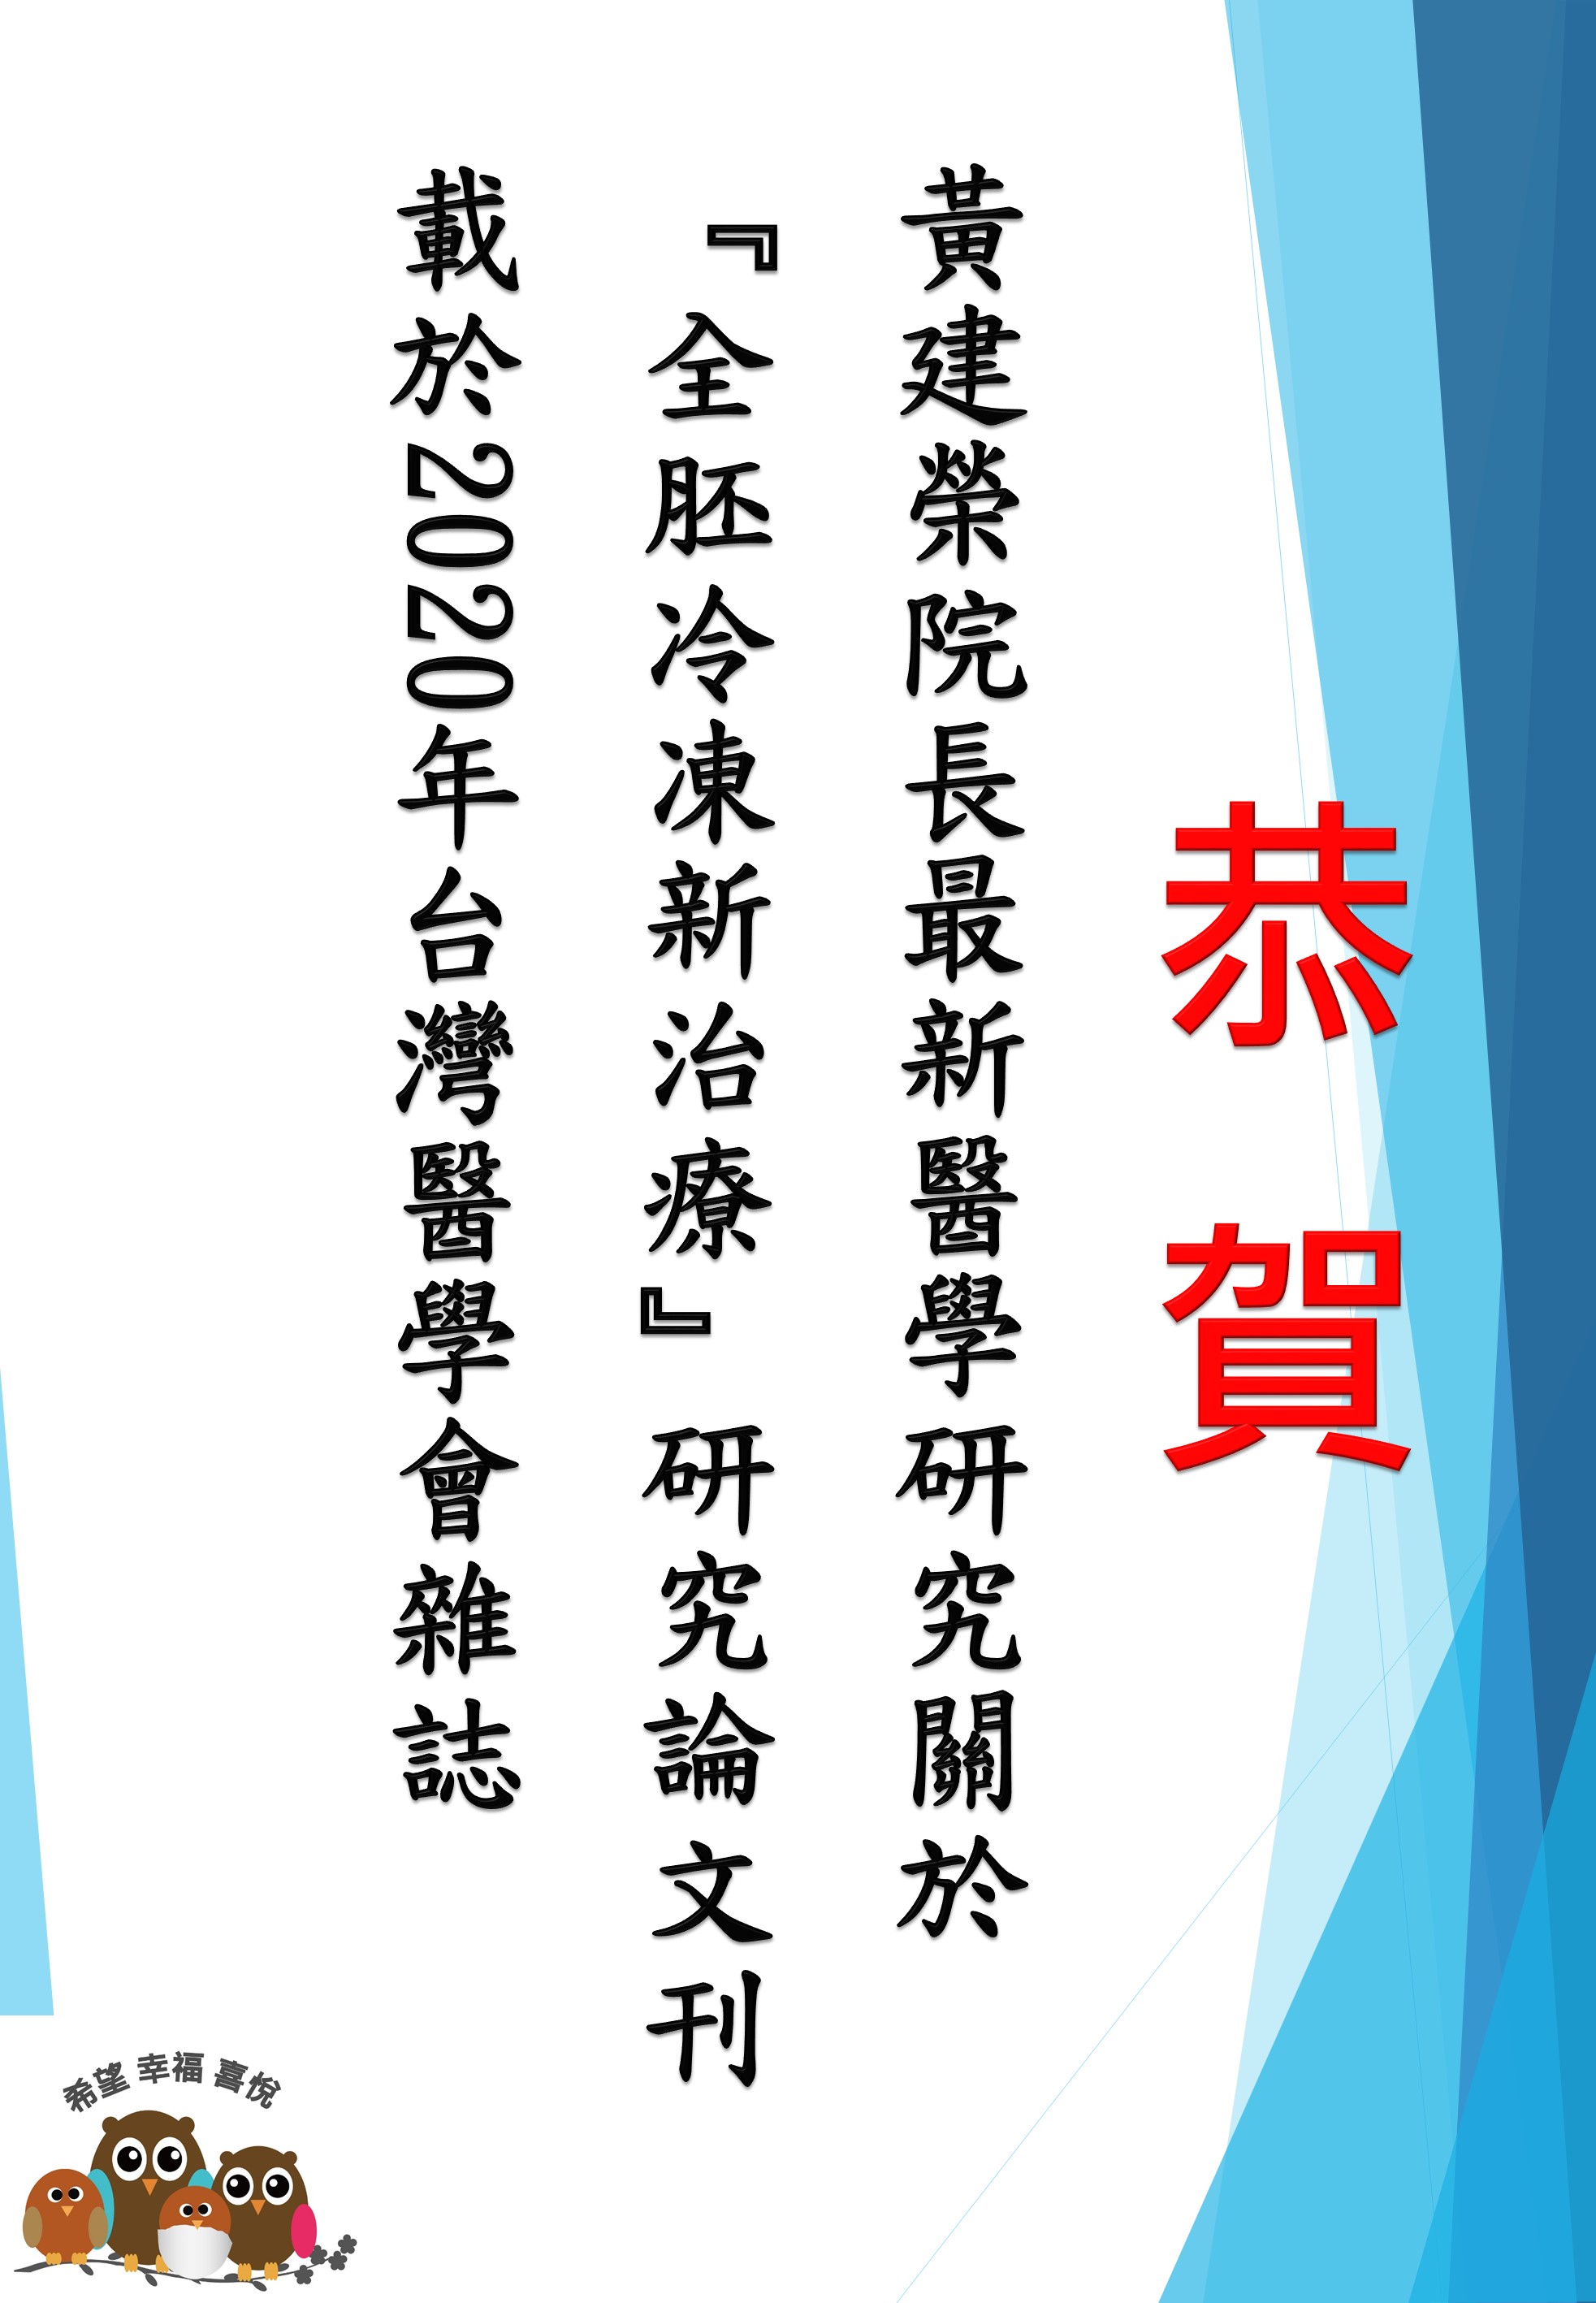 恭  賀 黃建榮院長最新醫學研究關於『全胚冷凍新治療』研究論文刊載於2020年台灣醫學會雜誌